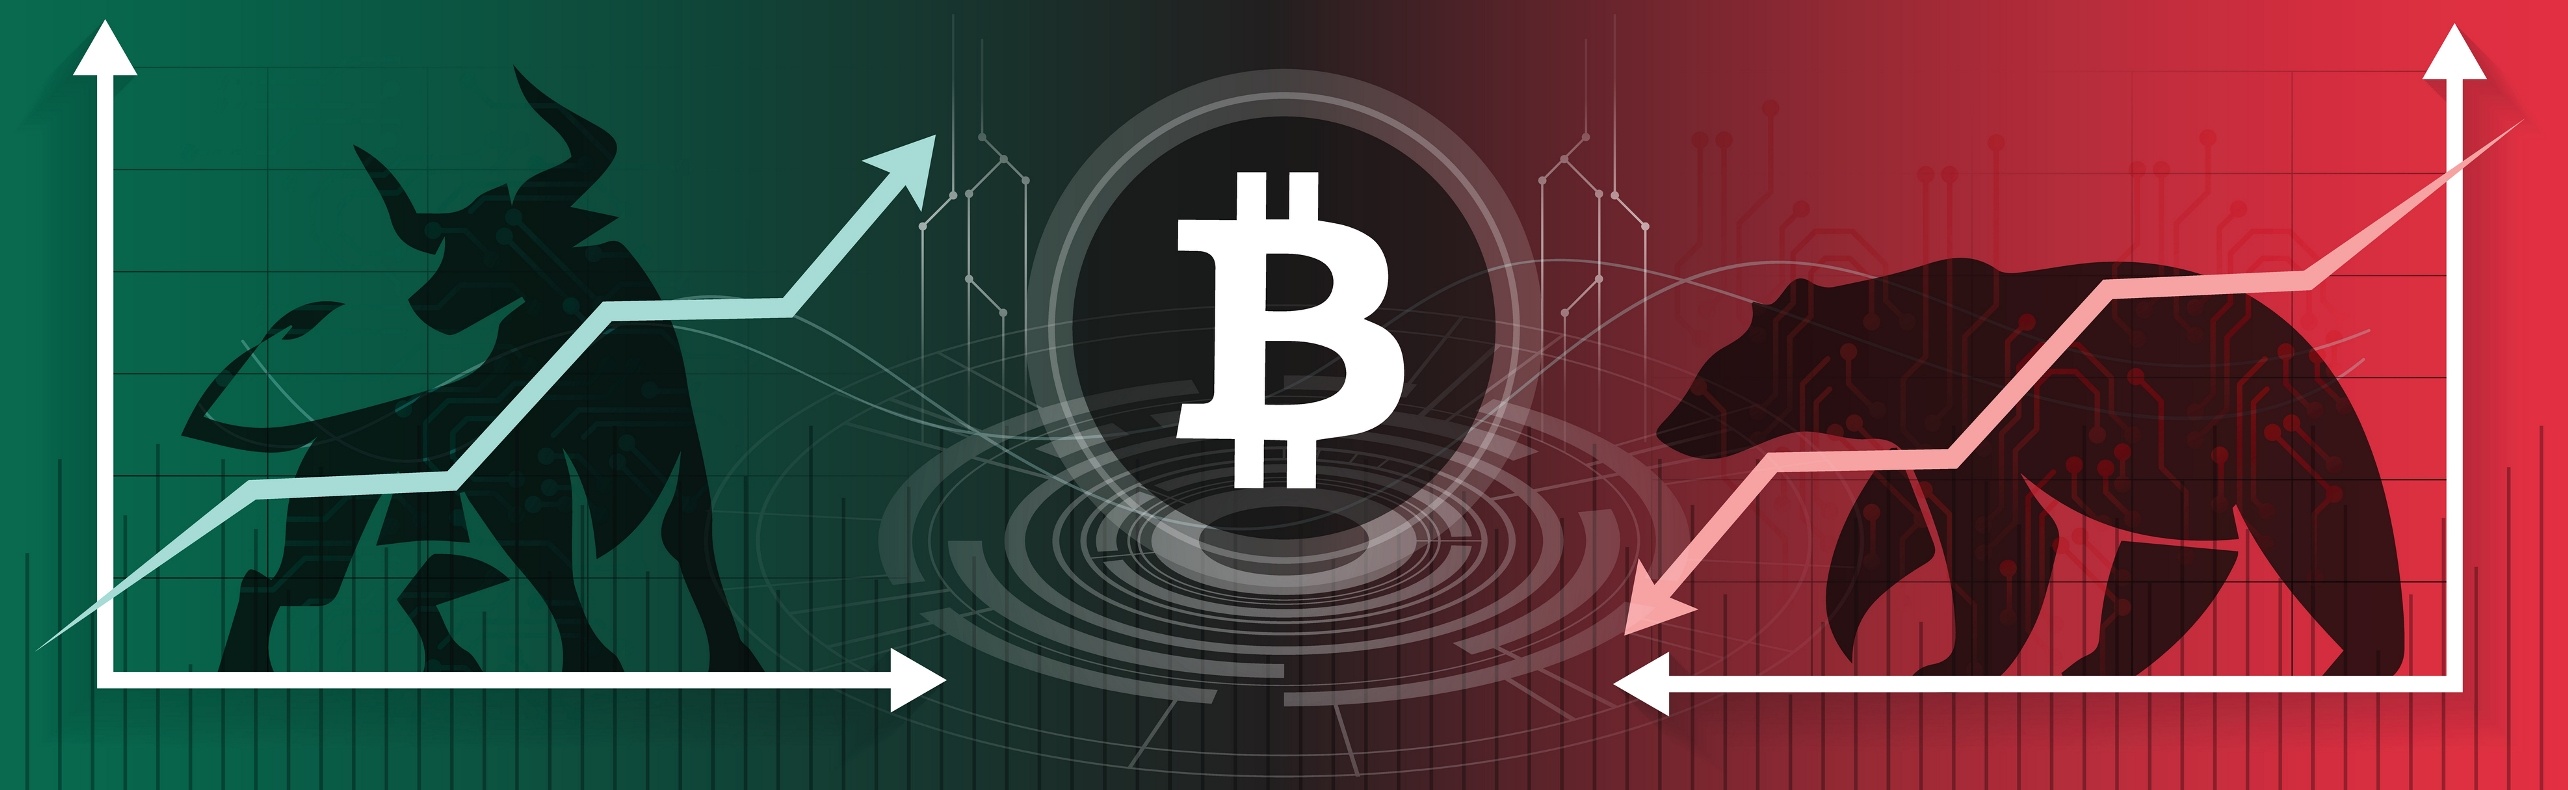 Bear and Bull Bitcoin Markets